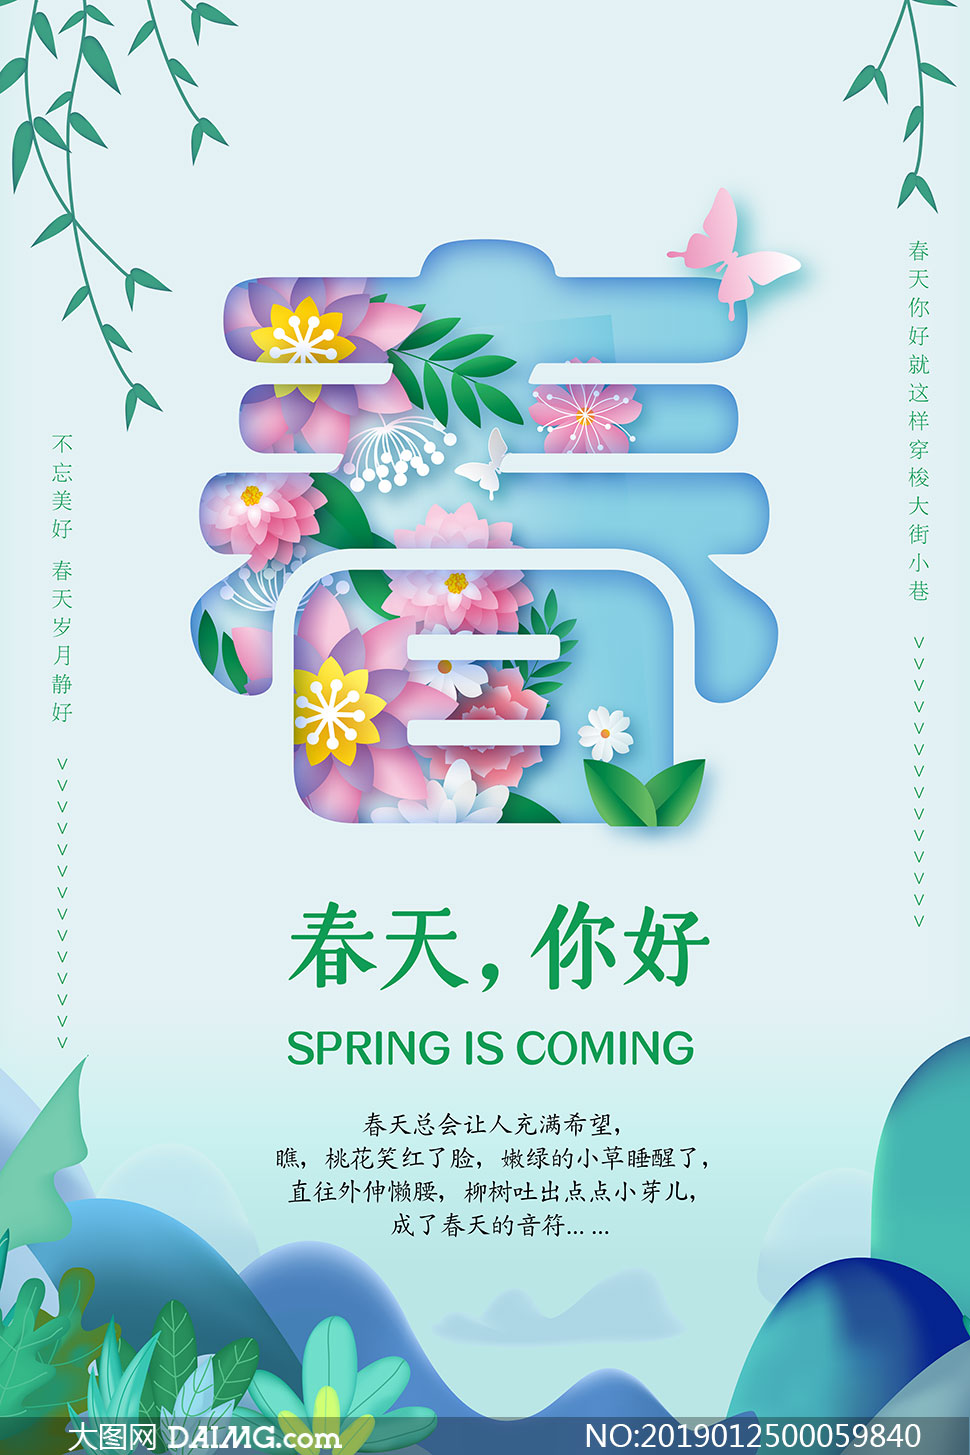 春季创意活动海报设计psd源文件